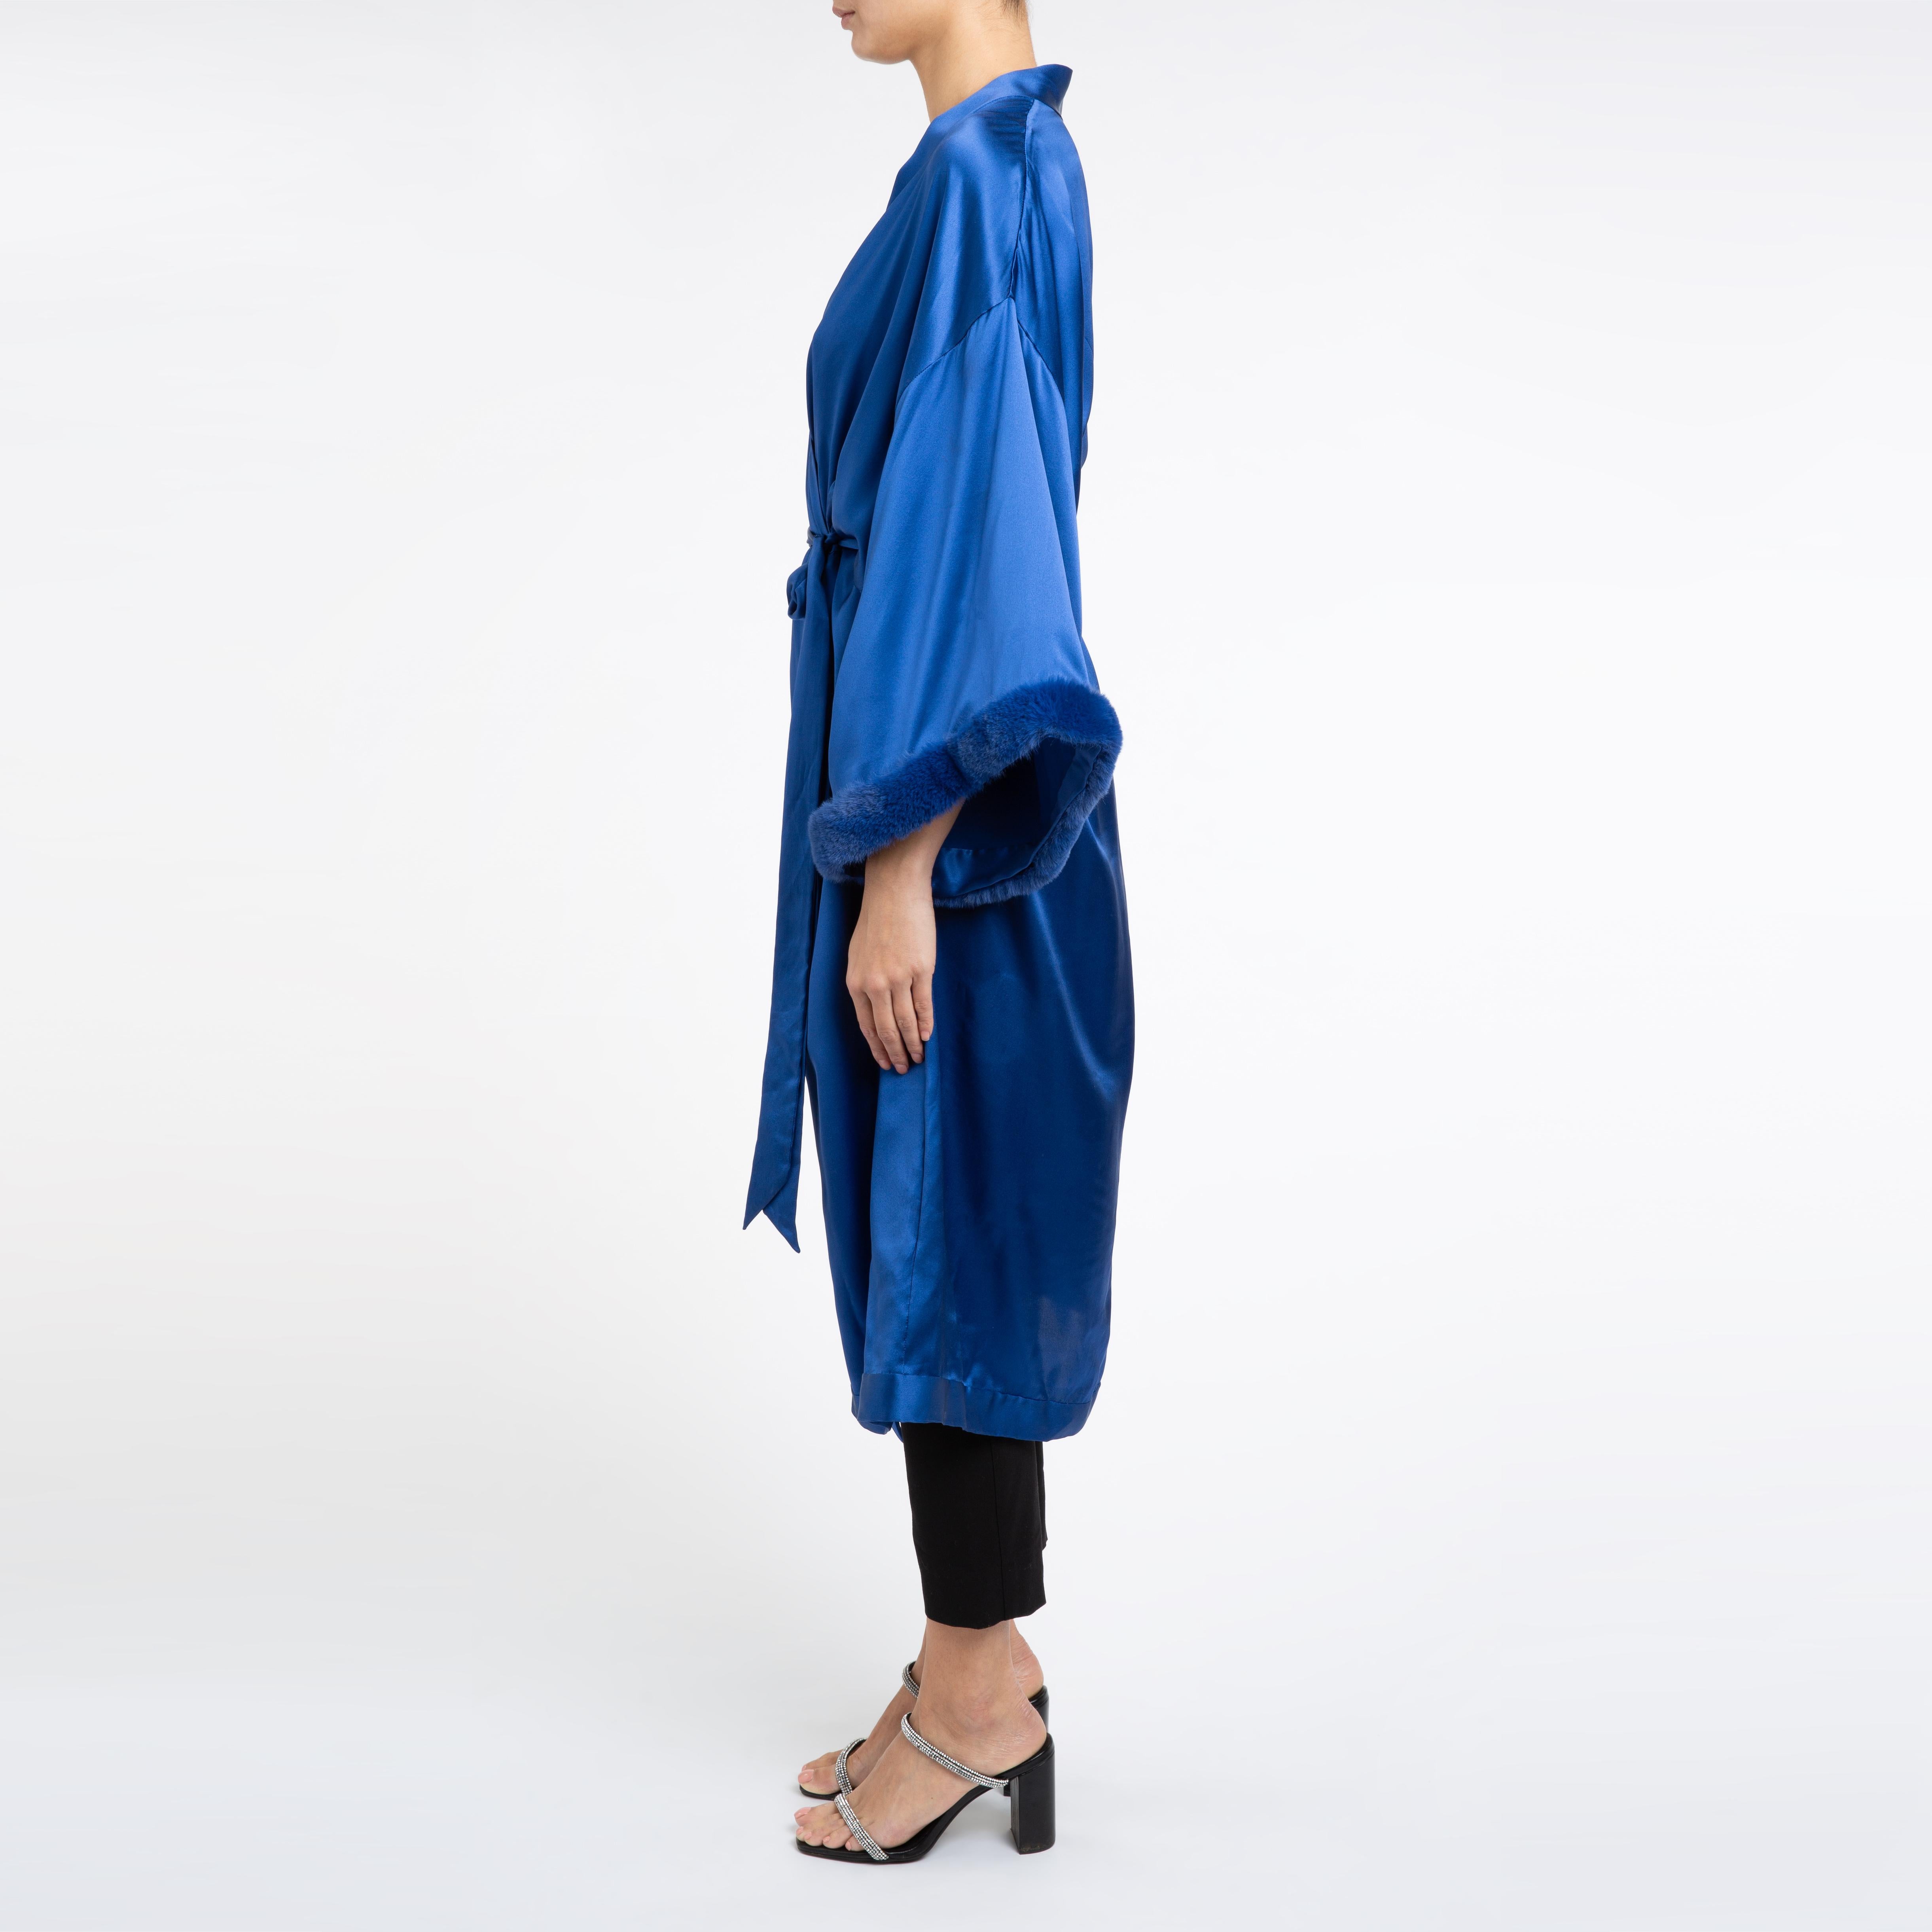 Bleu Verheyen London - Robe kimono bleue en satin de soie italien et fausse fourrure - Taille unique  en vente